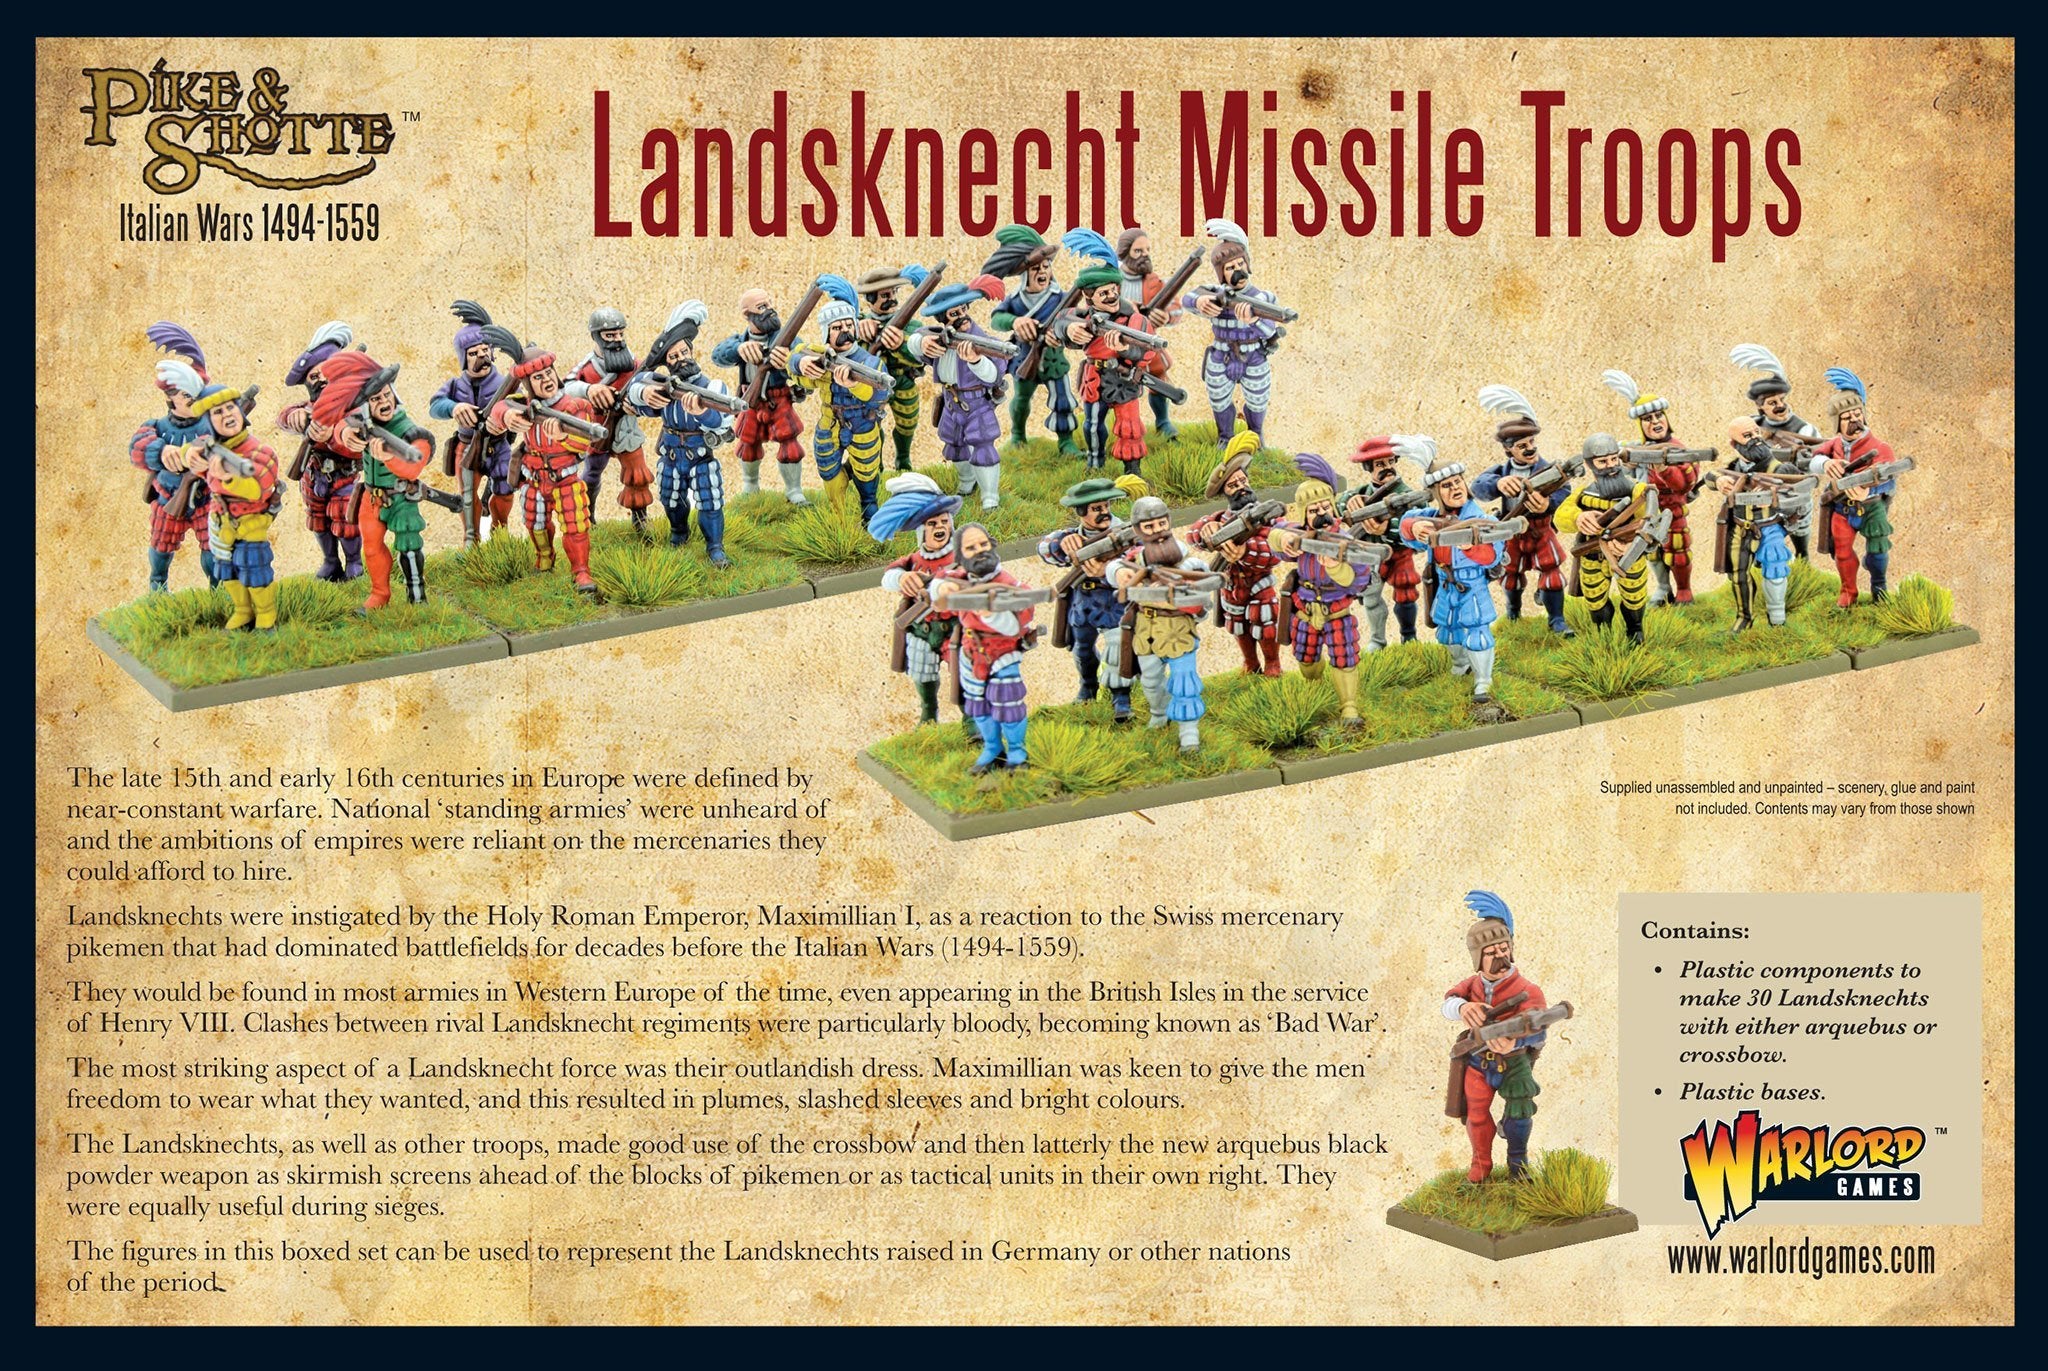 Landsknecht missile troops